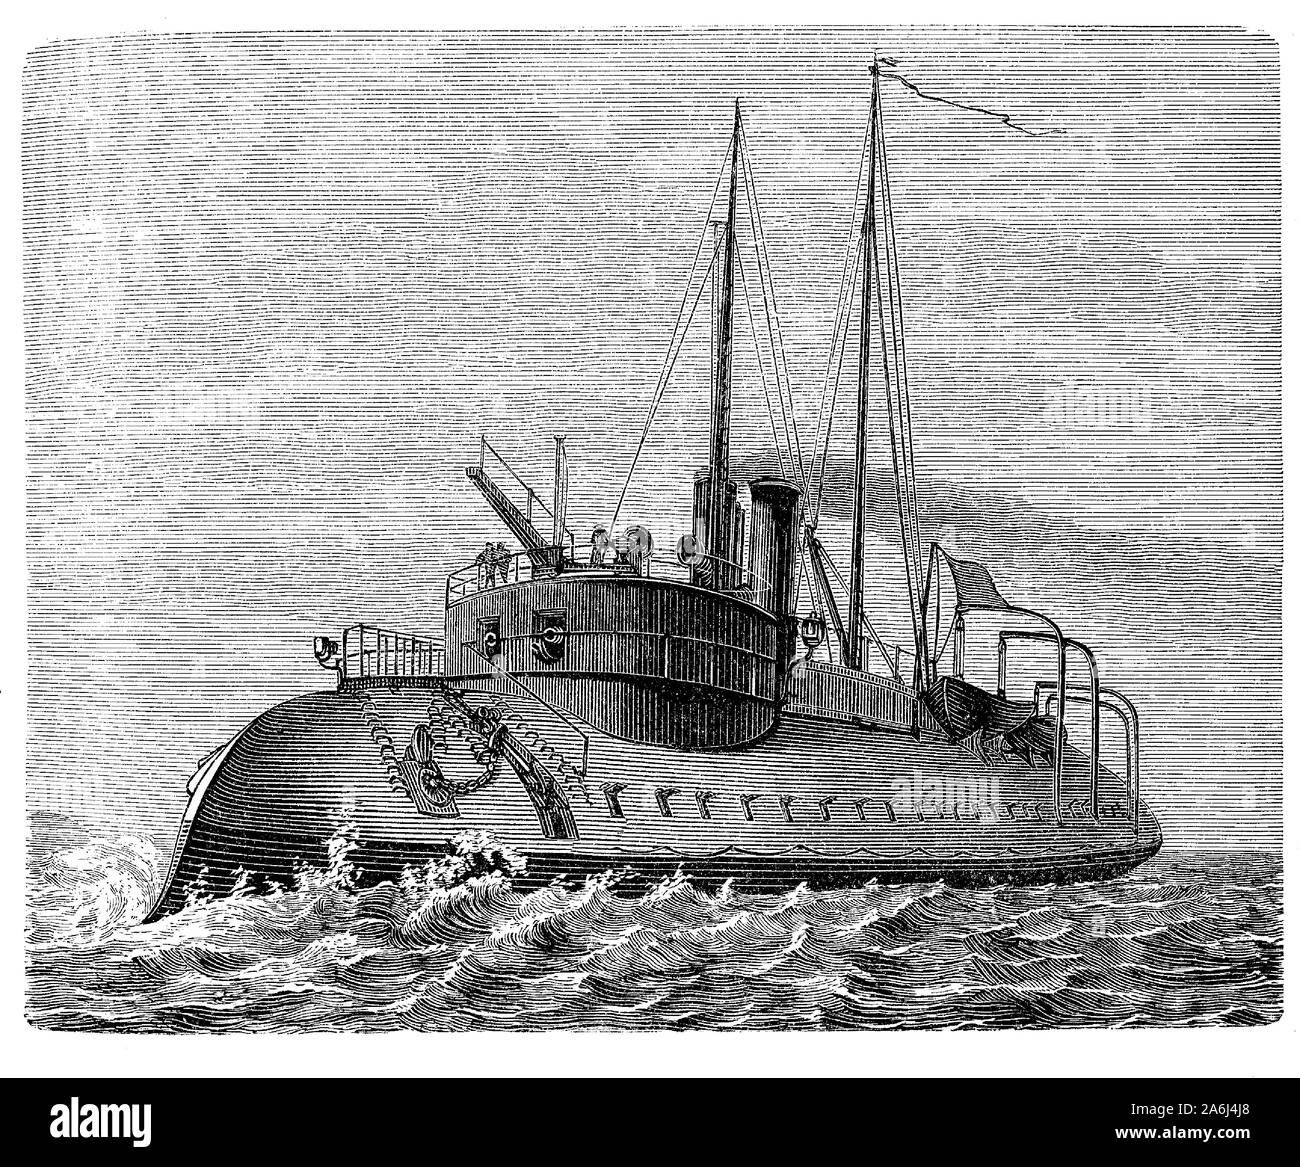 Tigre francese corazzata ironclad ram del 1871 con un sottomarino di becco corazzato a prua di affondare la nave nemica Foto Stock